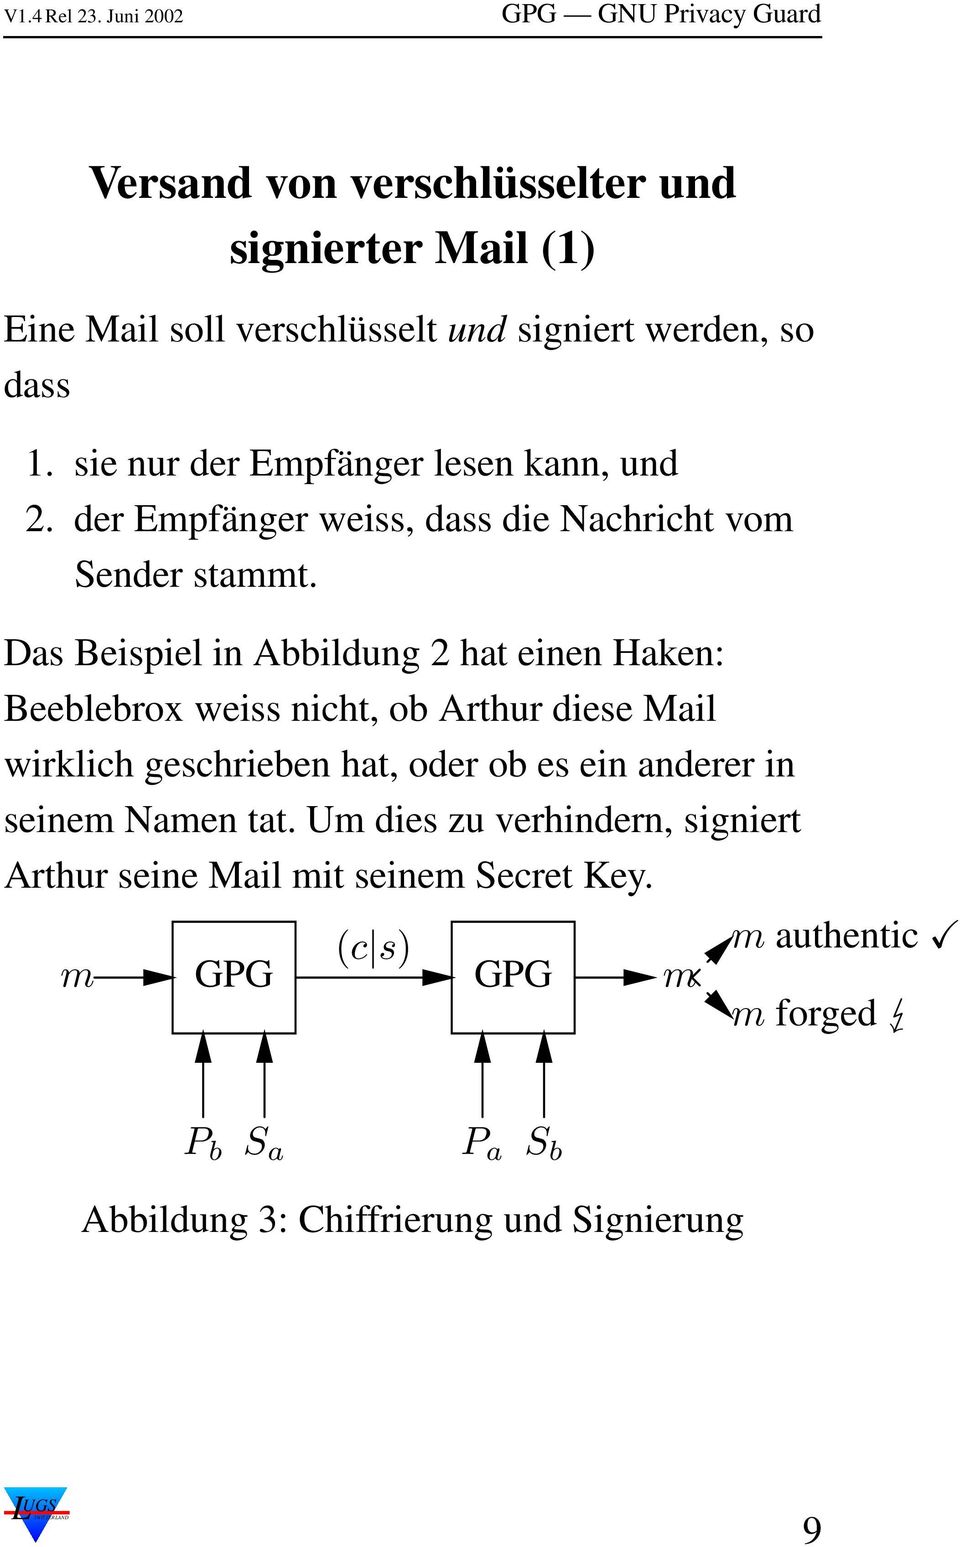 Das Beispiel in Abbildung 2 hat einen Haken: Beeblebrox weiss nicht, ob Arthur diese Mail wirklich geschrieben hat, oder ob es ein